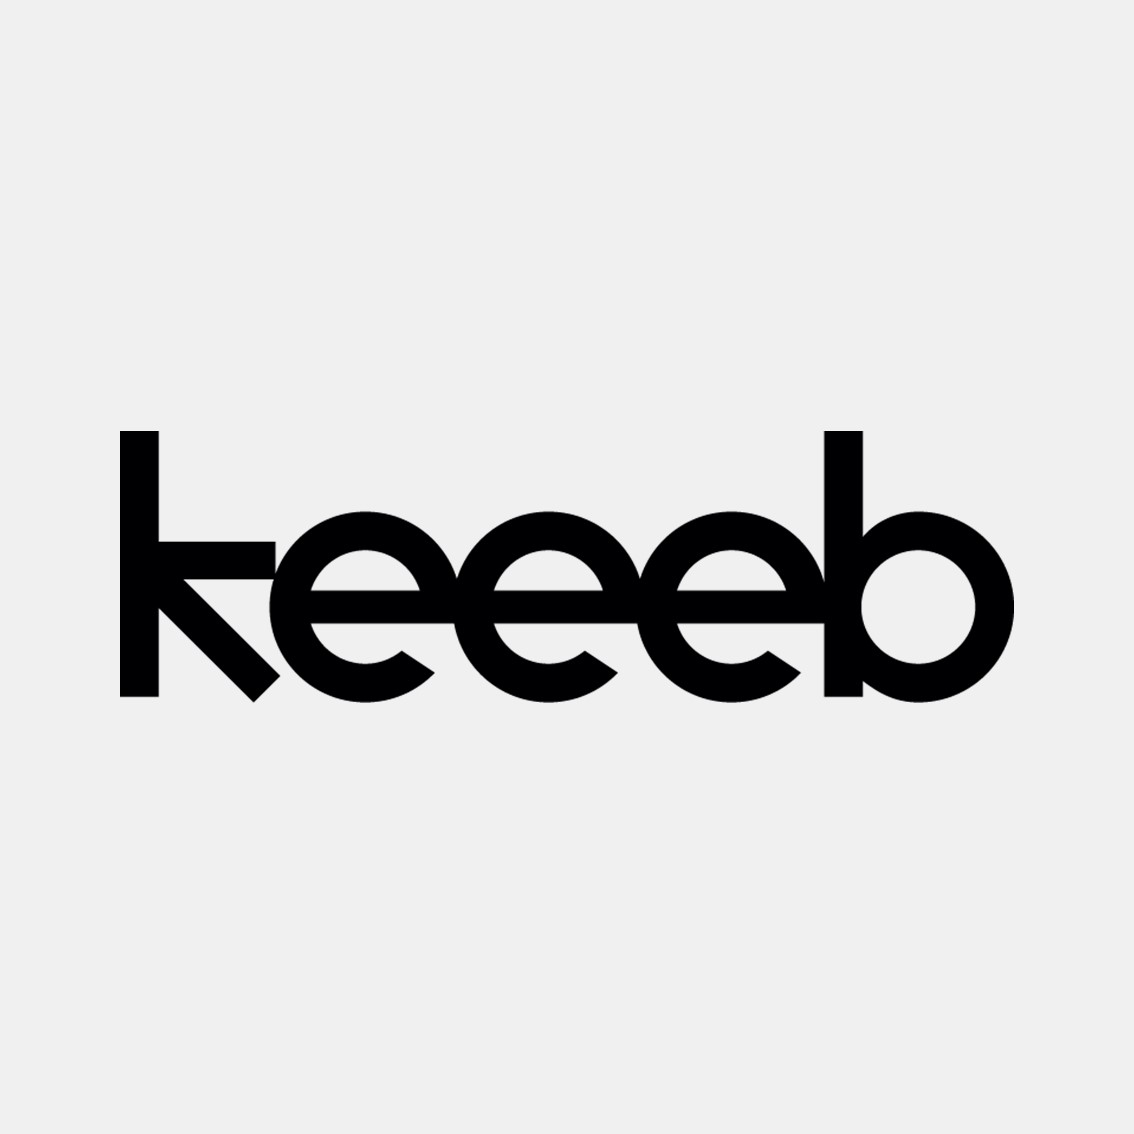 Keeeb_Inc Logo